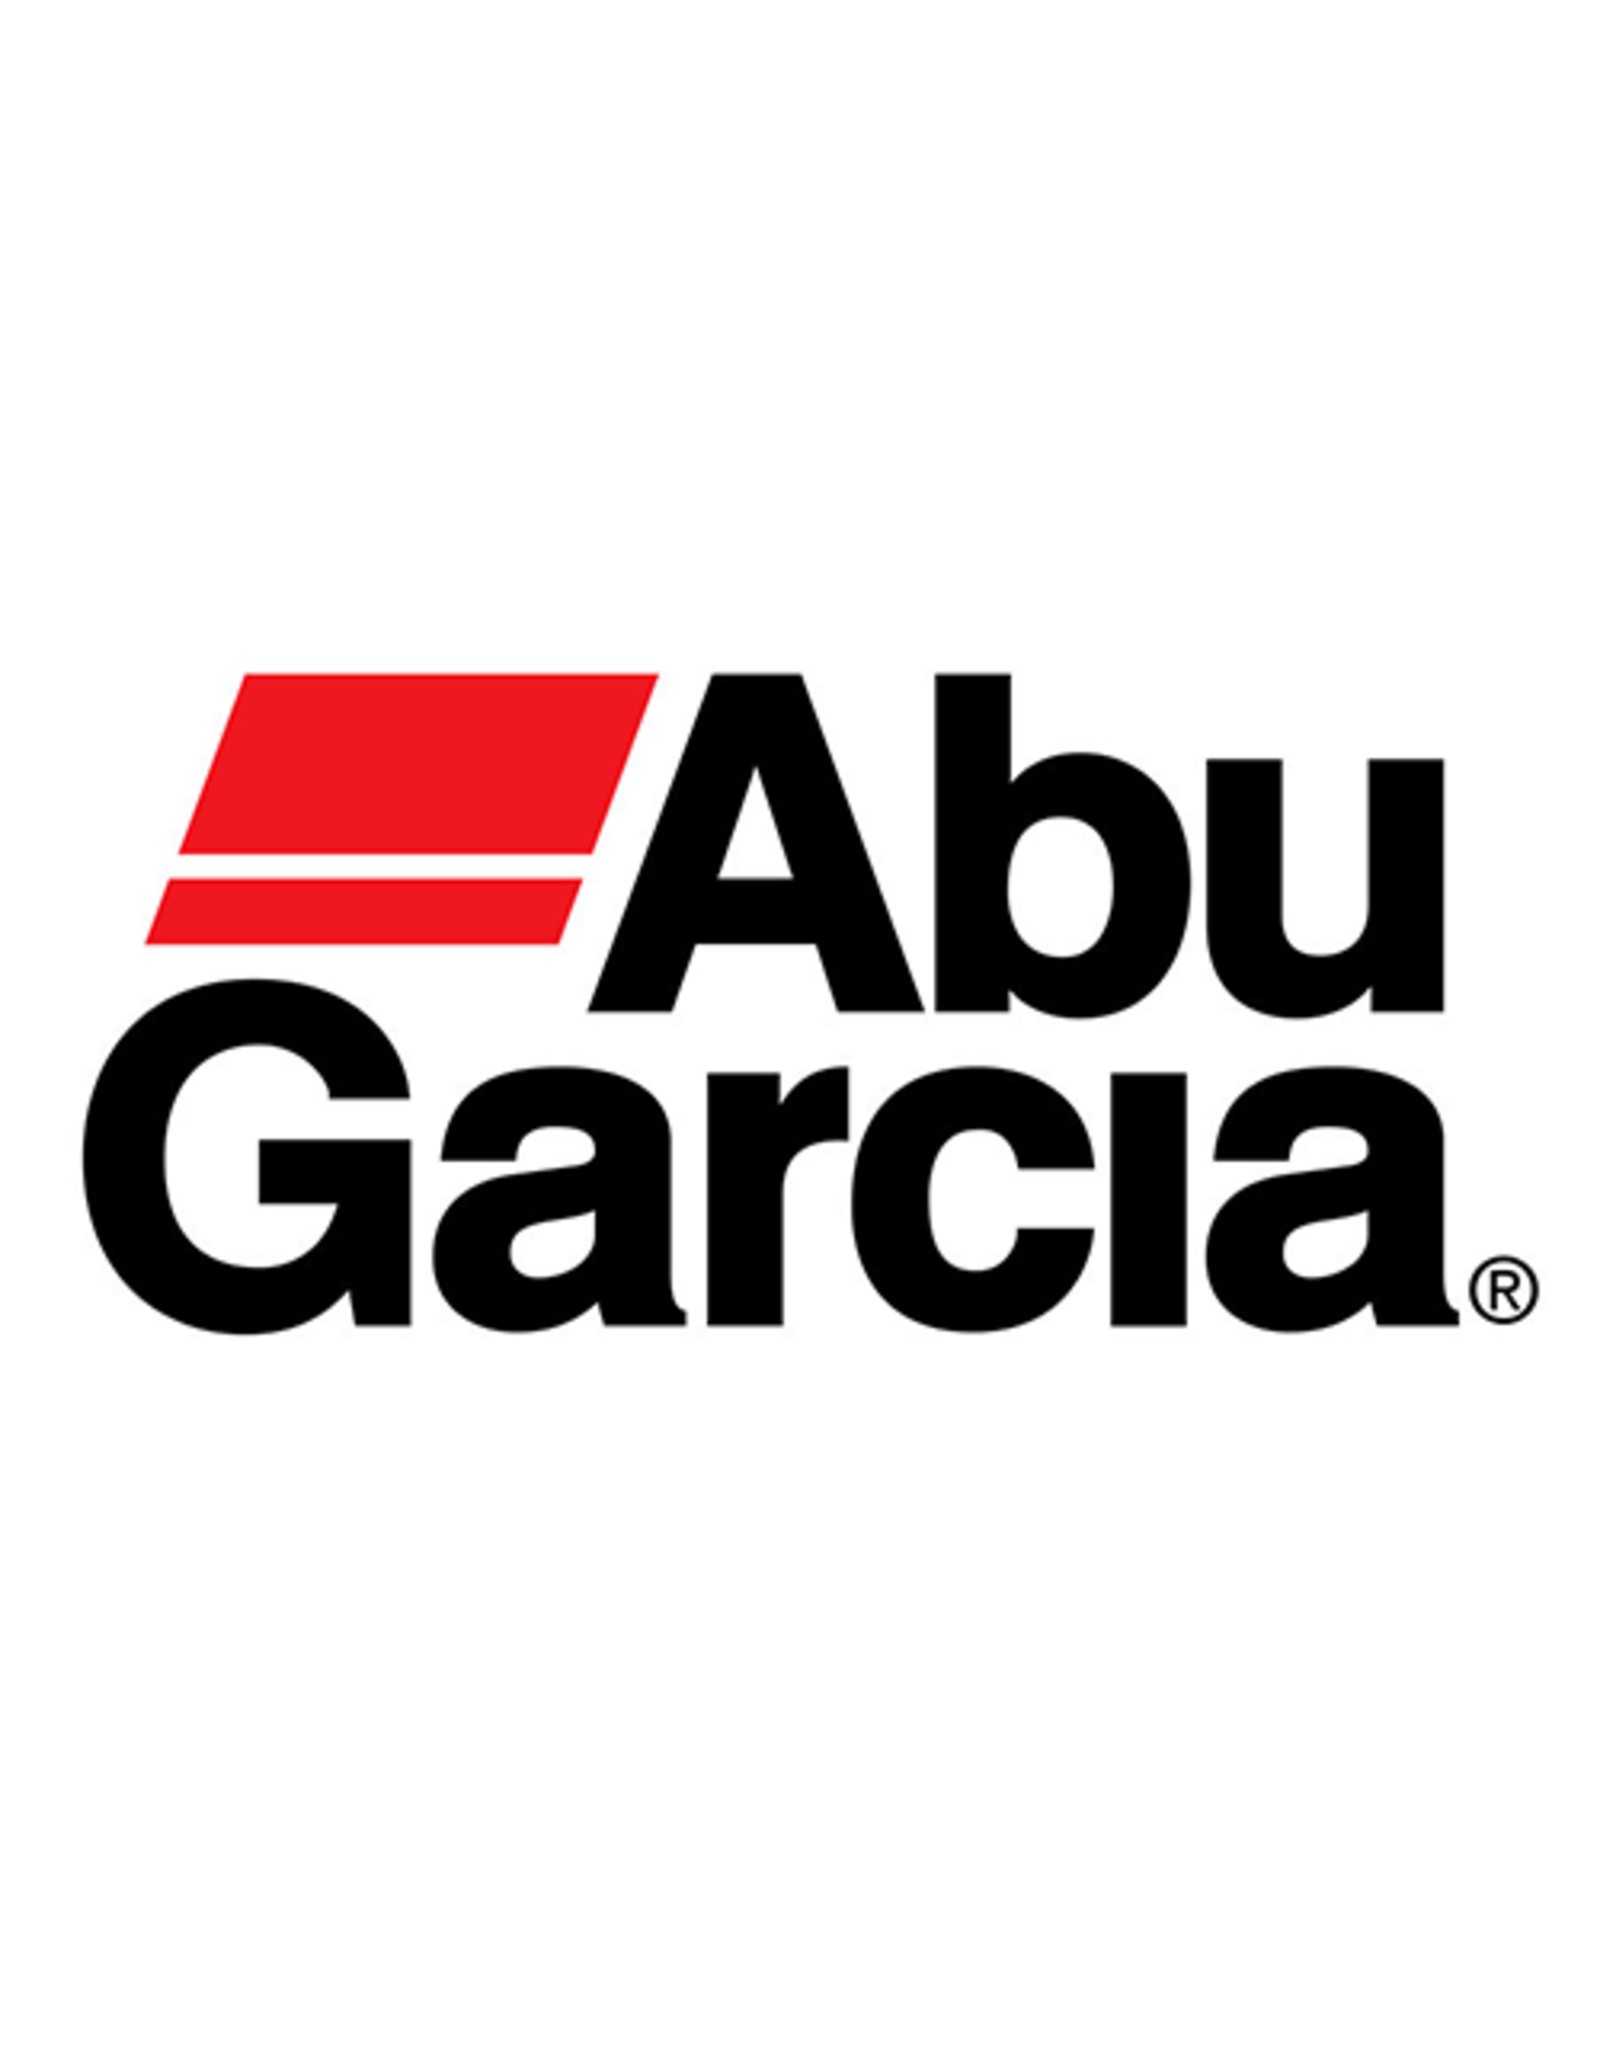 Abu Garcia 1085342  SCREW